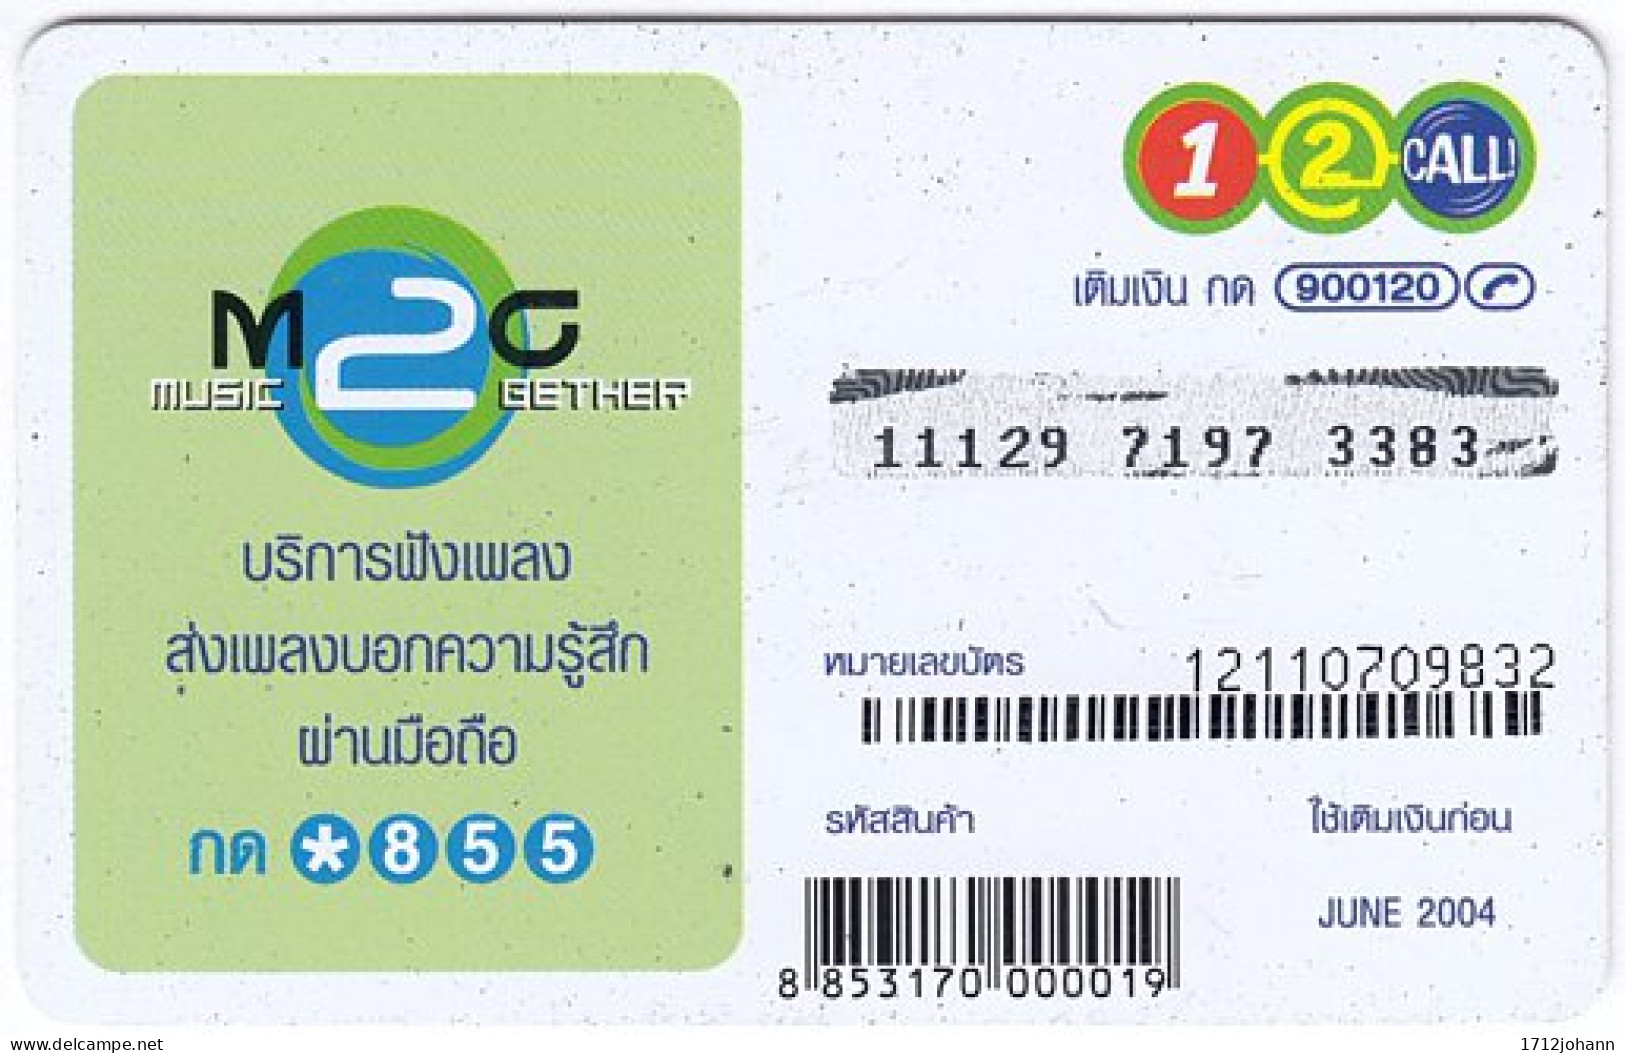 THAILAND Q-432 Prepaid 1-2-call - Used - Thailand